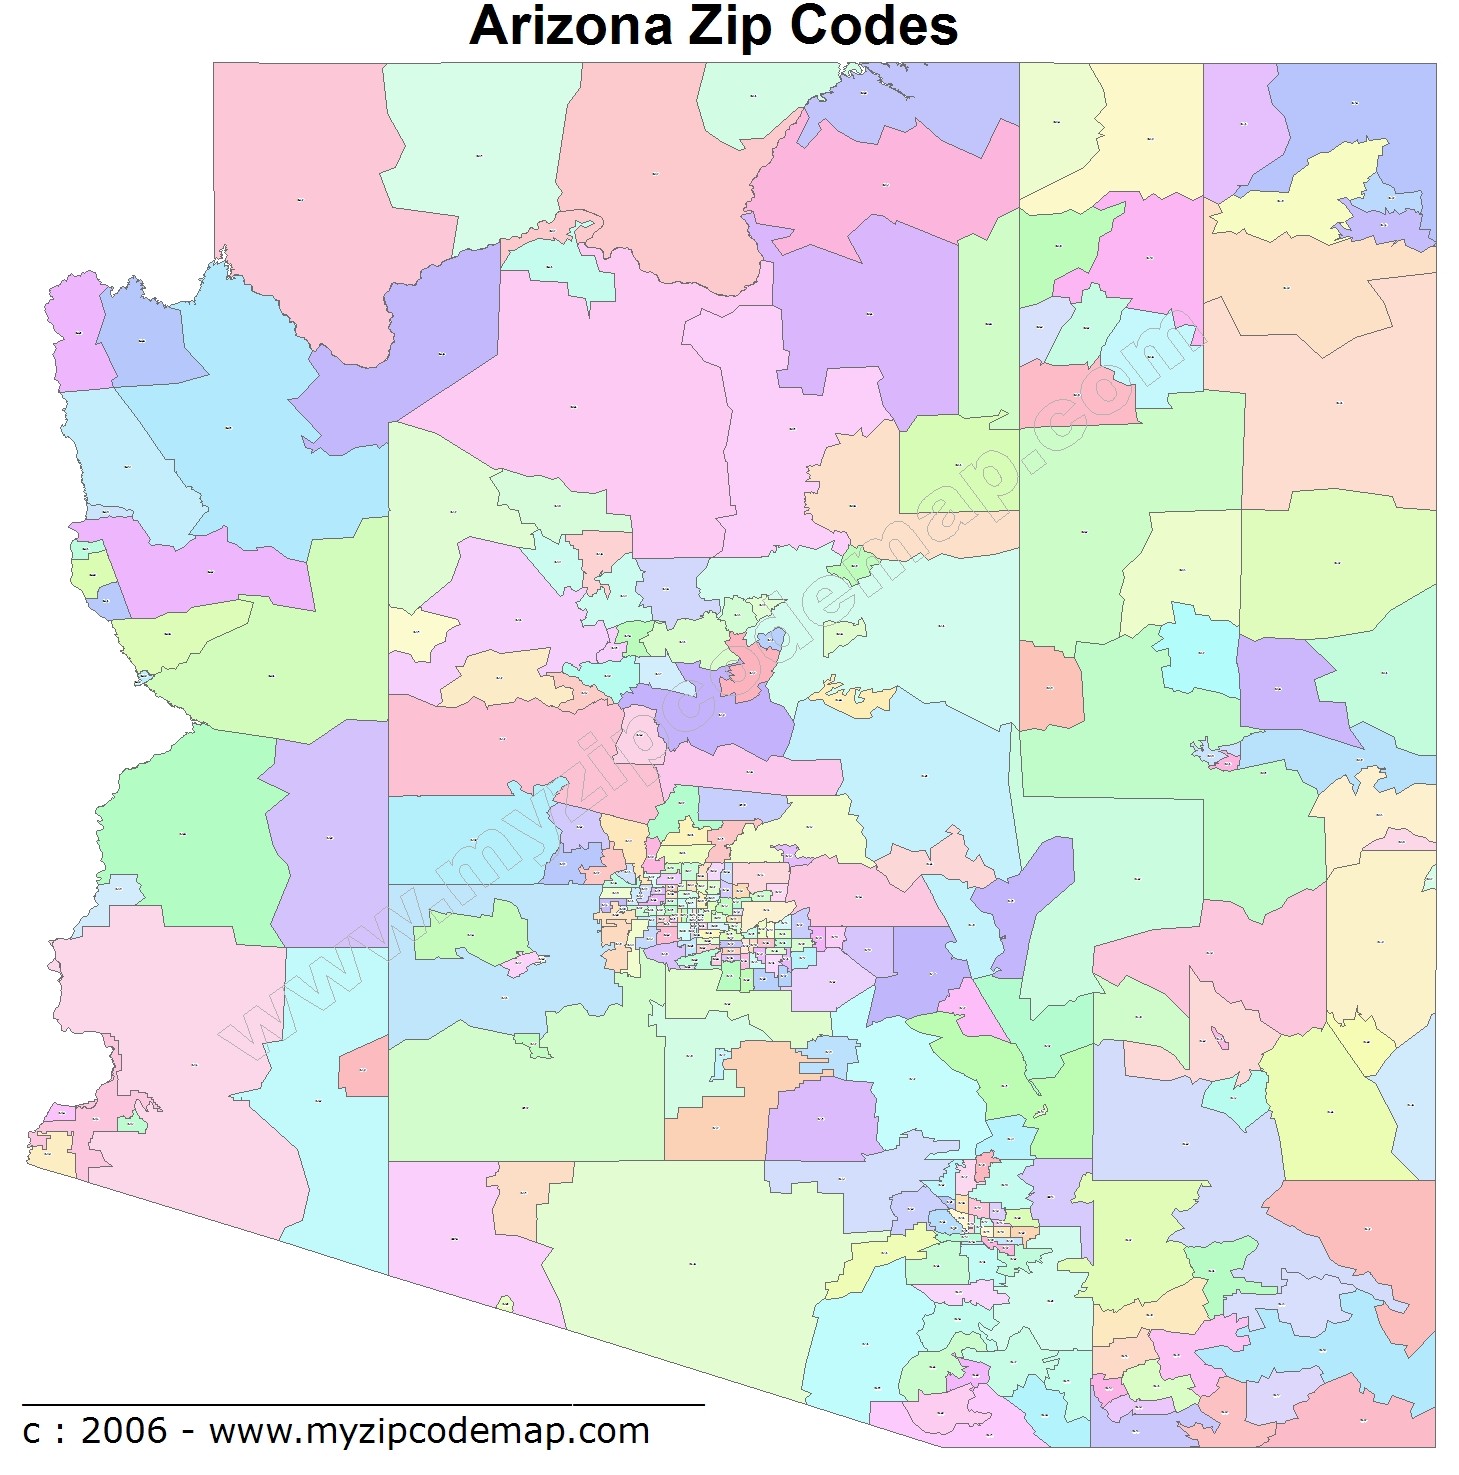 Arizona Zip Code Maps Free Arizona Zip Code Maps 7108